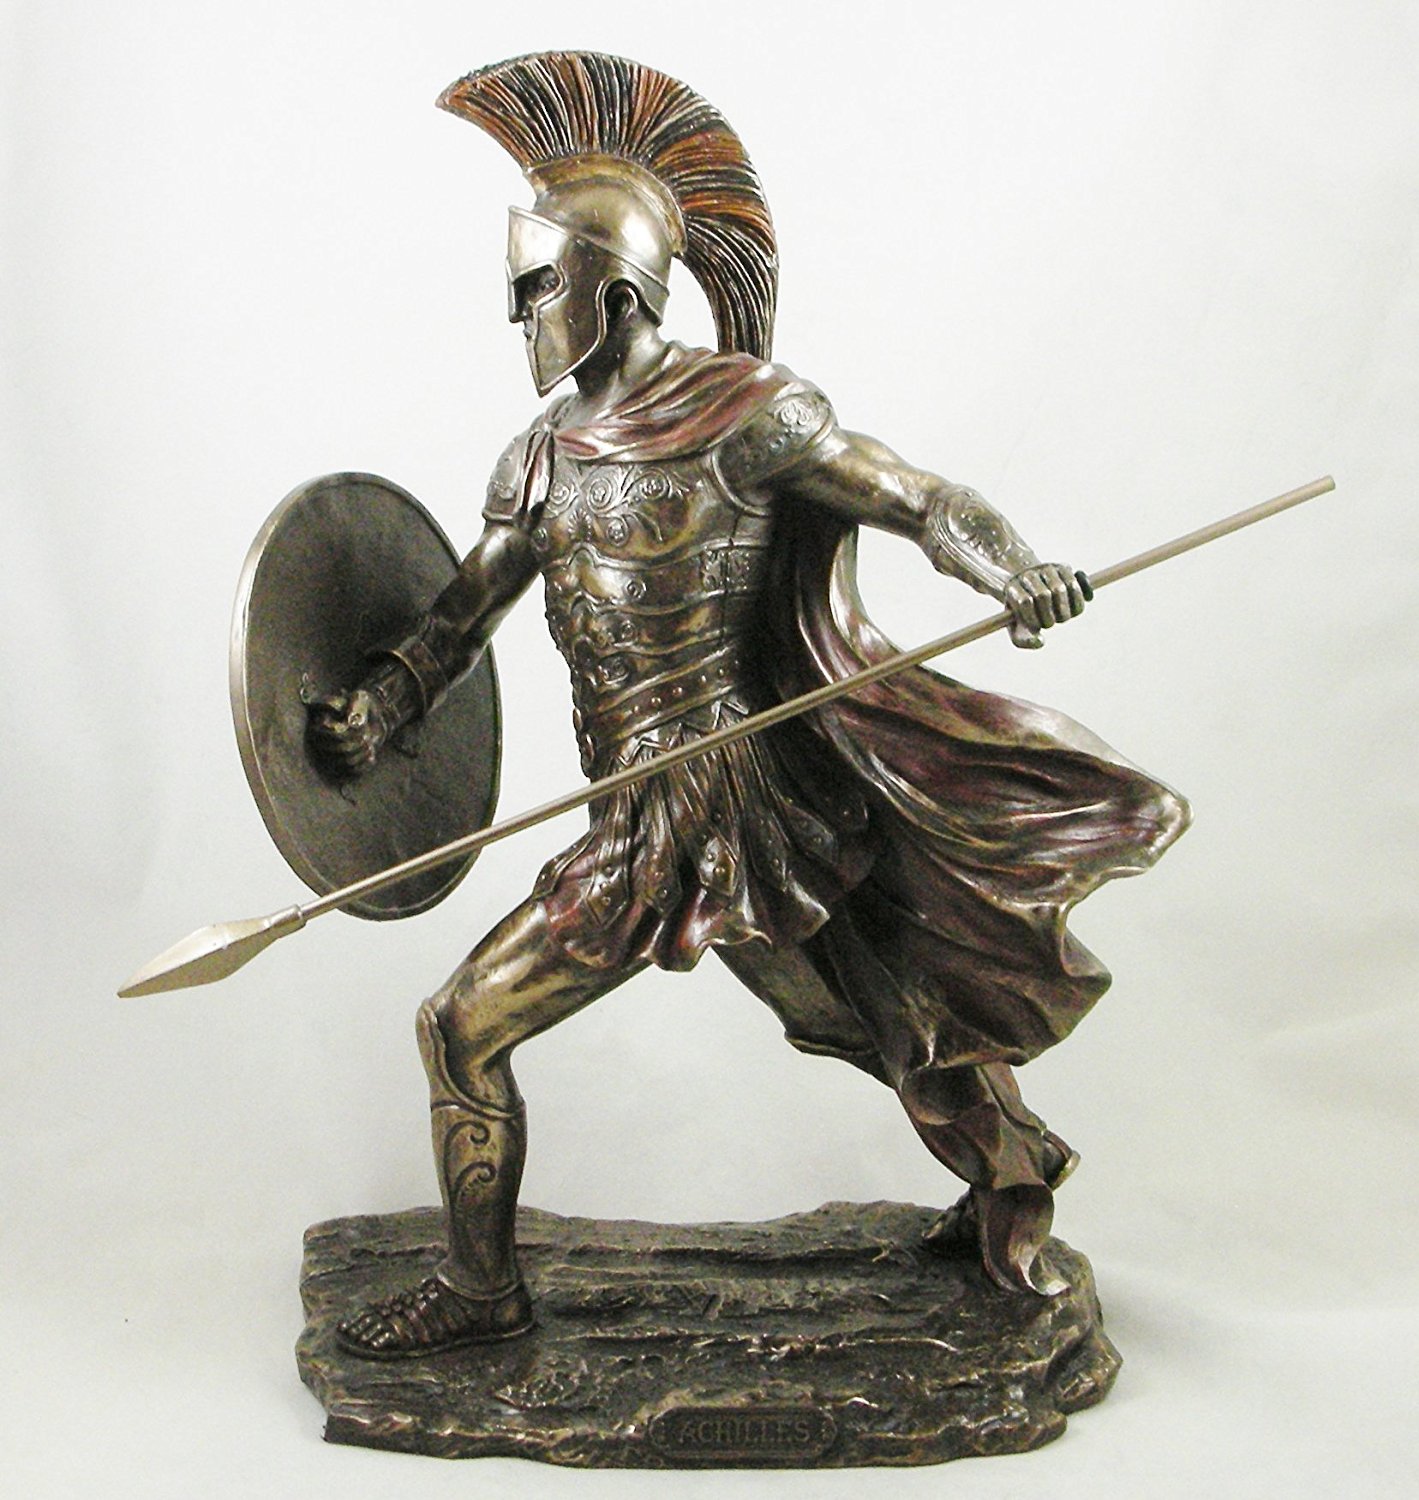 Achilles' Ancient Greek Warrior Bronzed Statue Figurine Sculpture ...